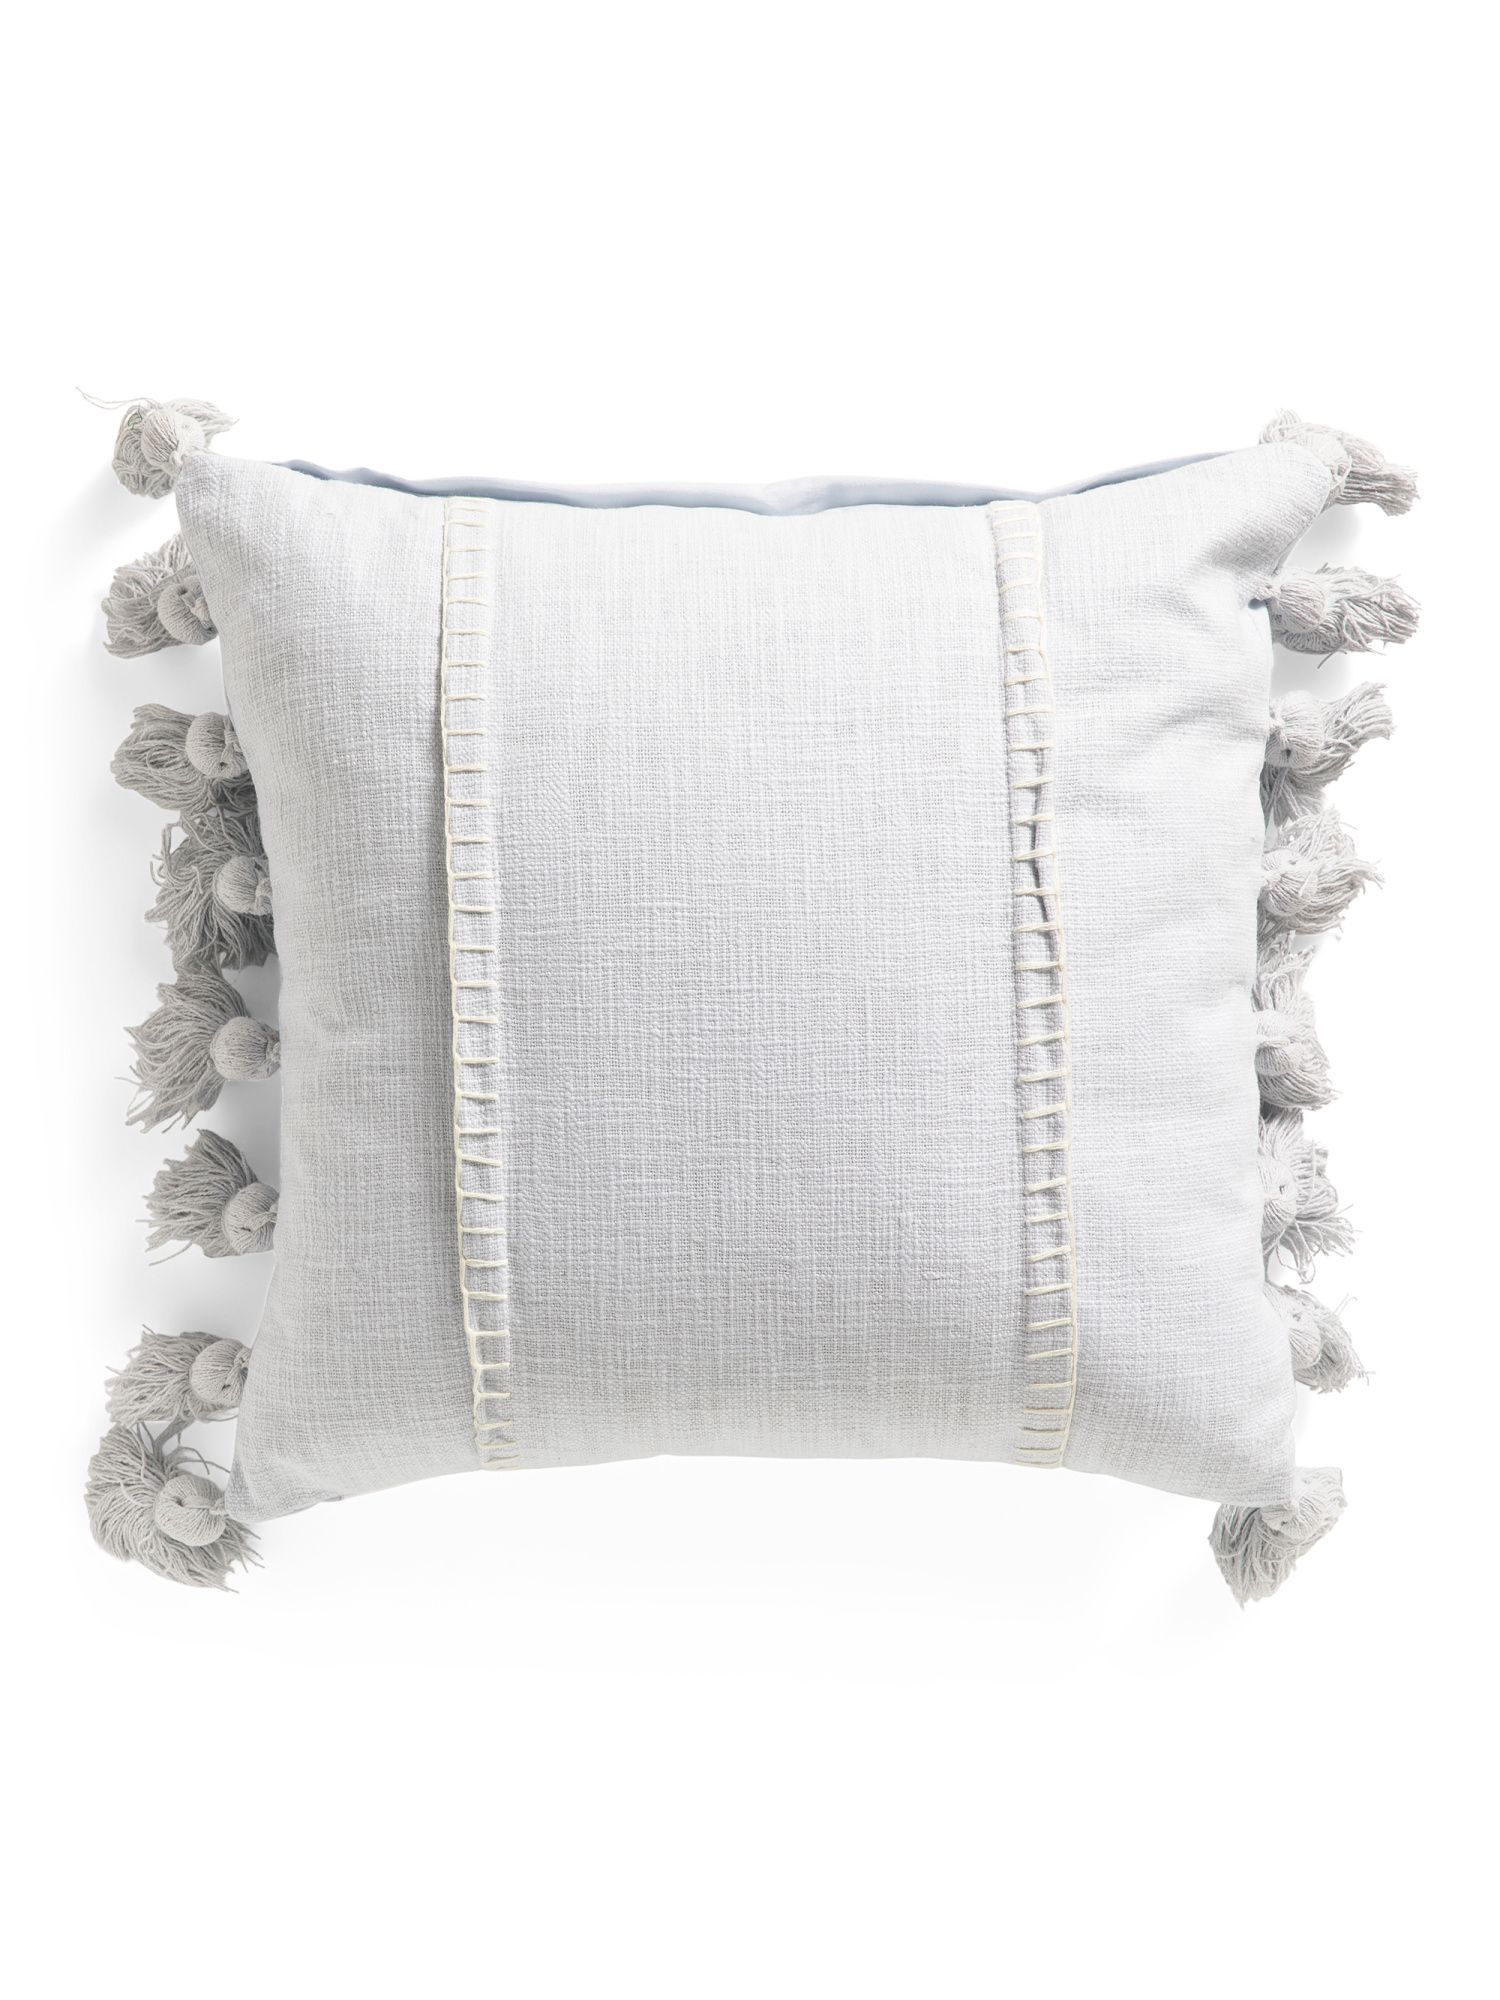 20x20 Whipstitch Pillow With Tassels | TJ Maxx